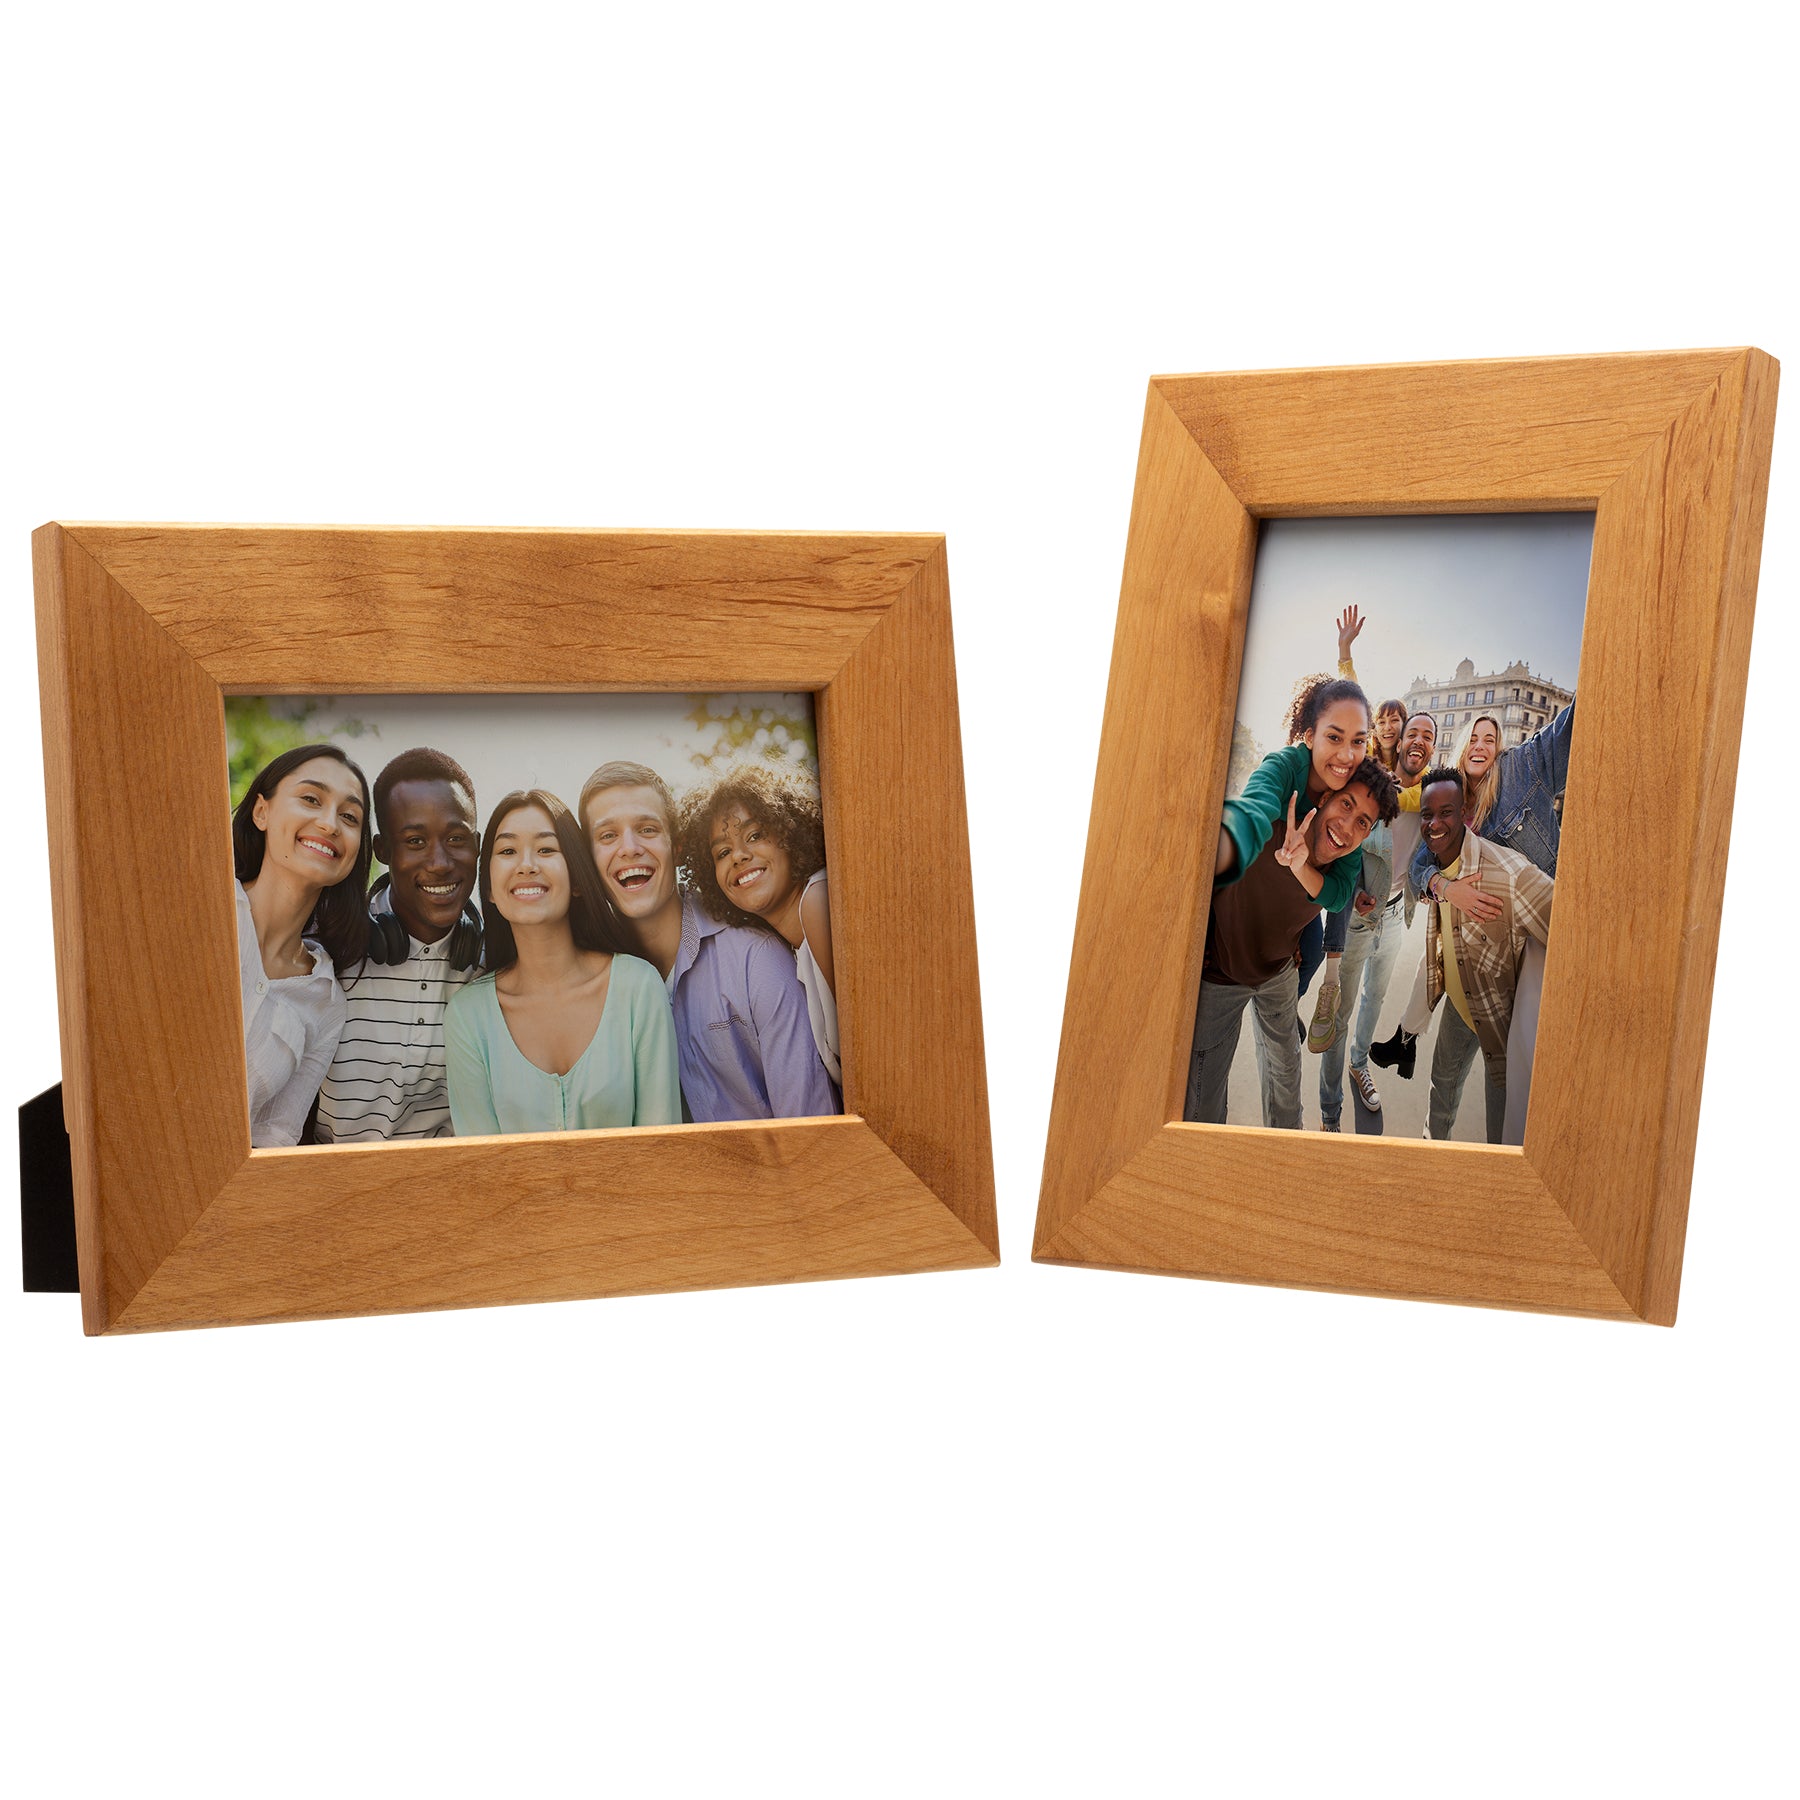 4" x 6" Alder Wood Picture Frame